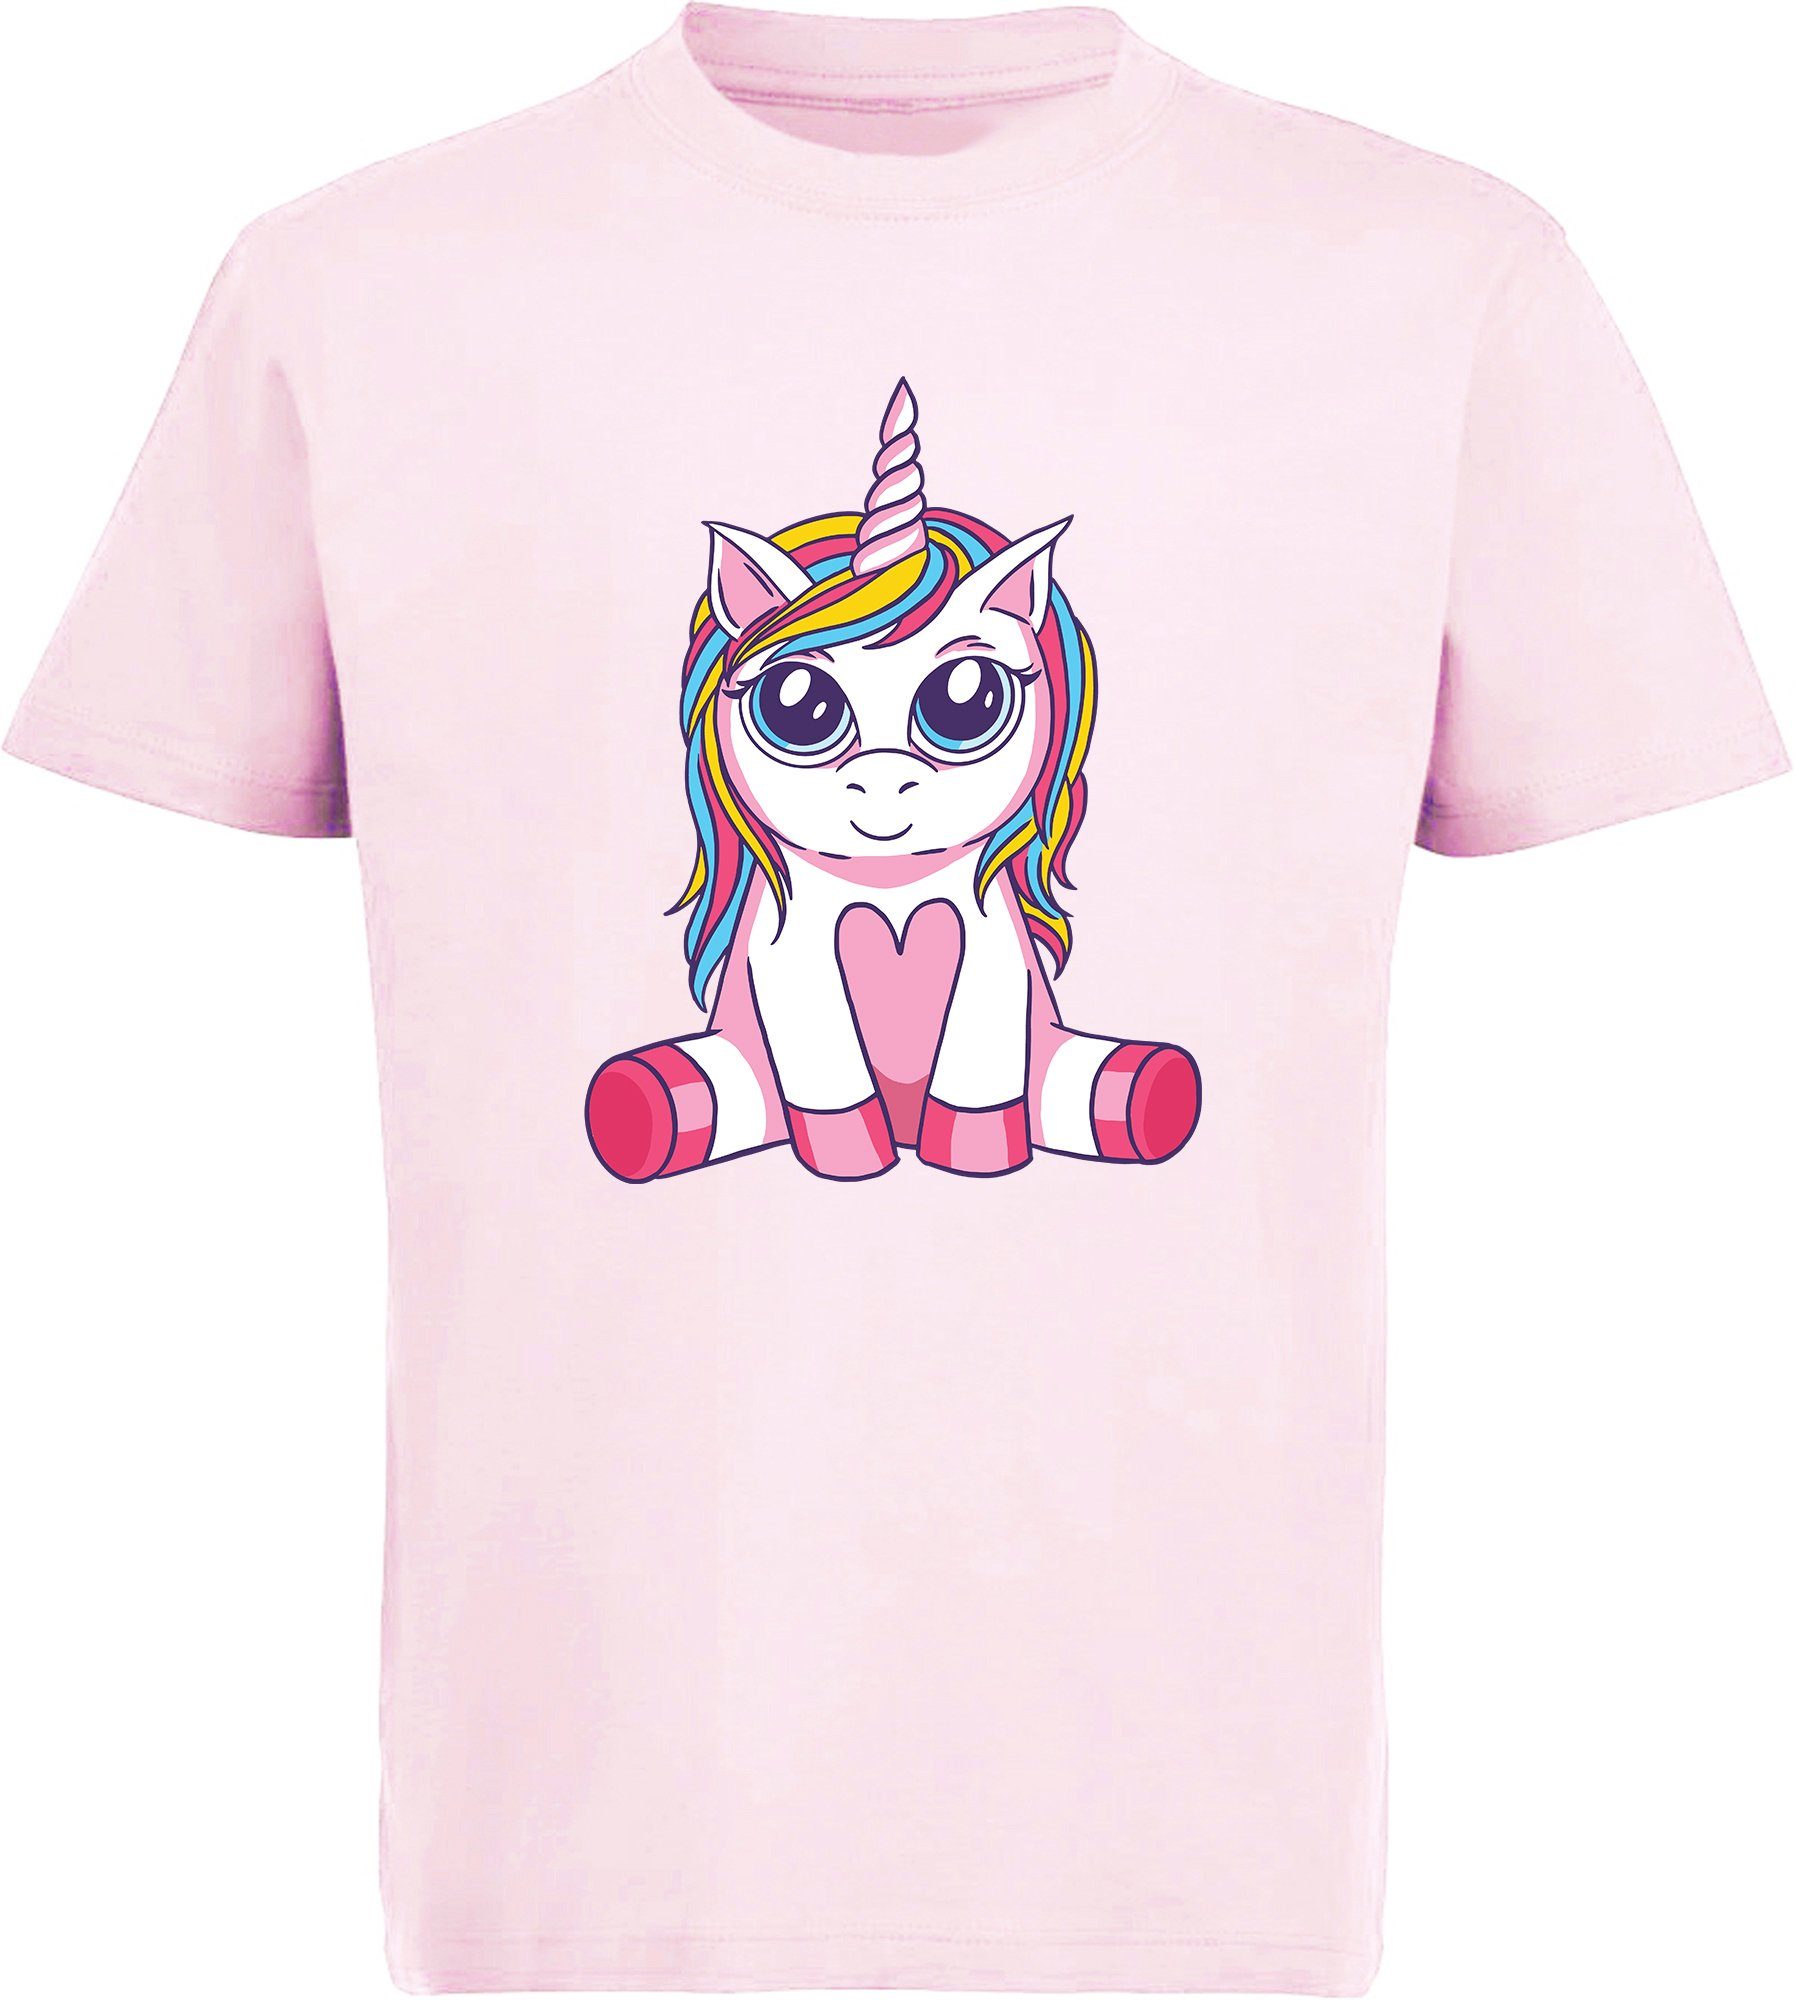 MyDesign24 T-Shirt Kinder Print Shirt bedruckt - Sitzendes Einhorn Baumwollshirt mit Aufdruck, i256 rosa